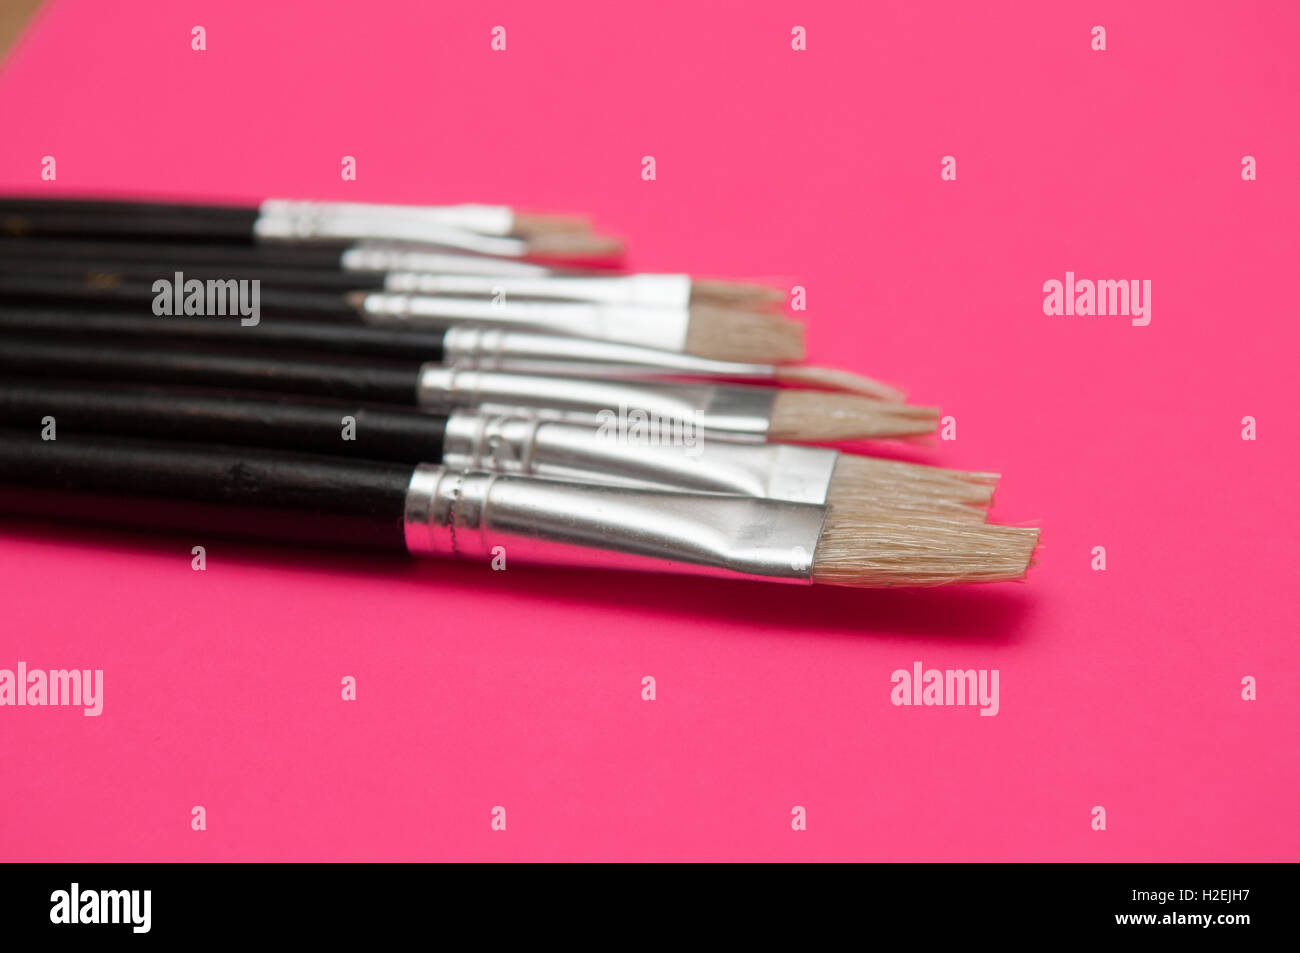 Artistas pinceles y plumas aparece sobre fondo de color rosa aislado Foto de stock